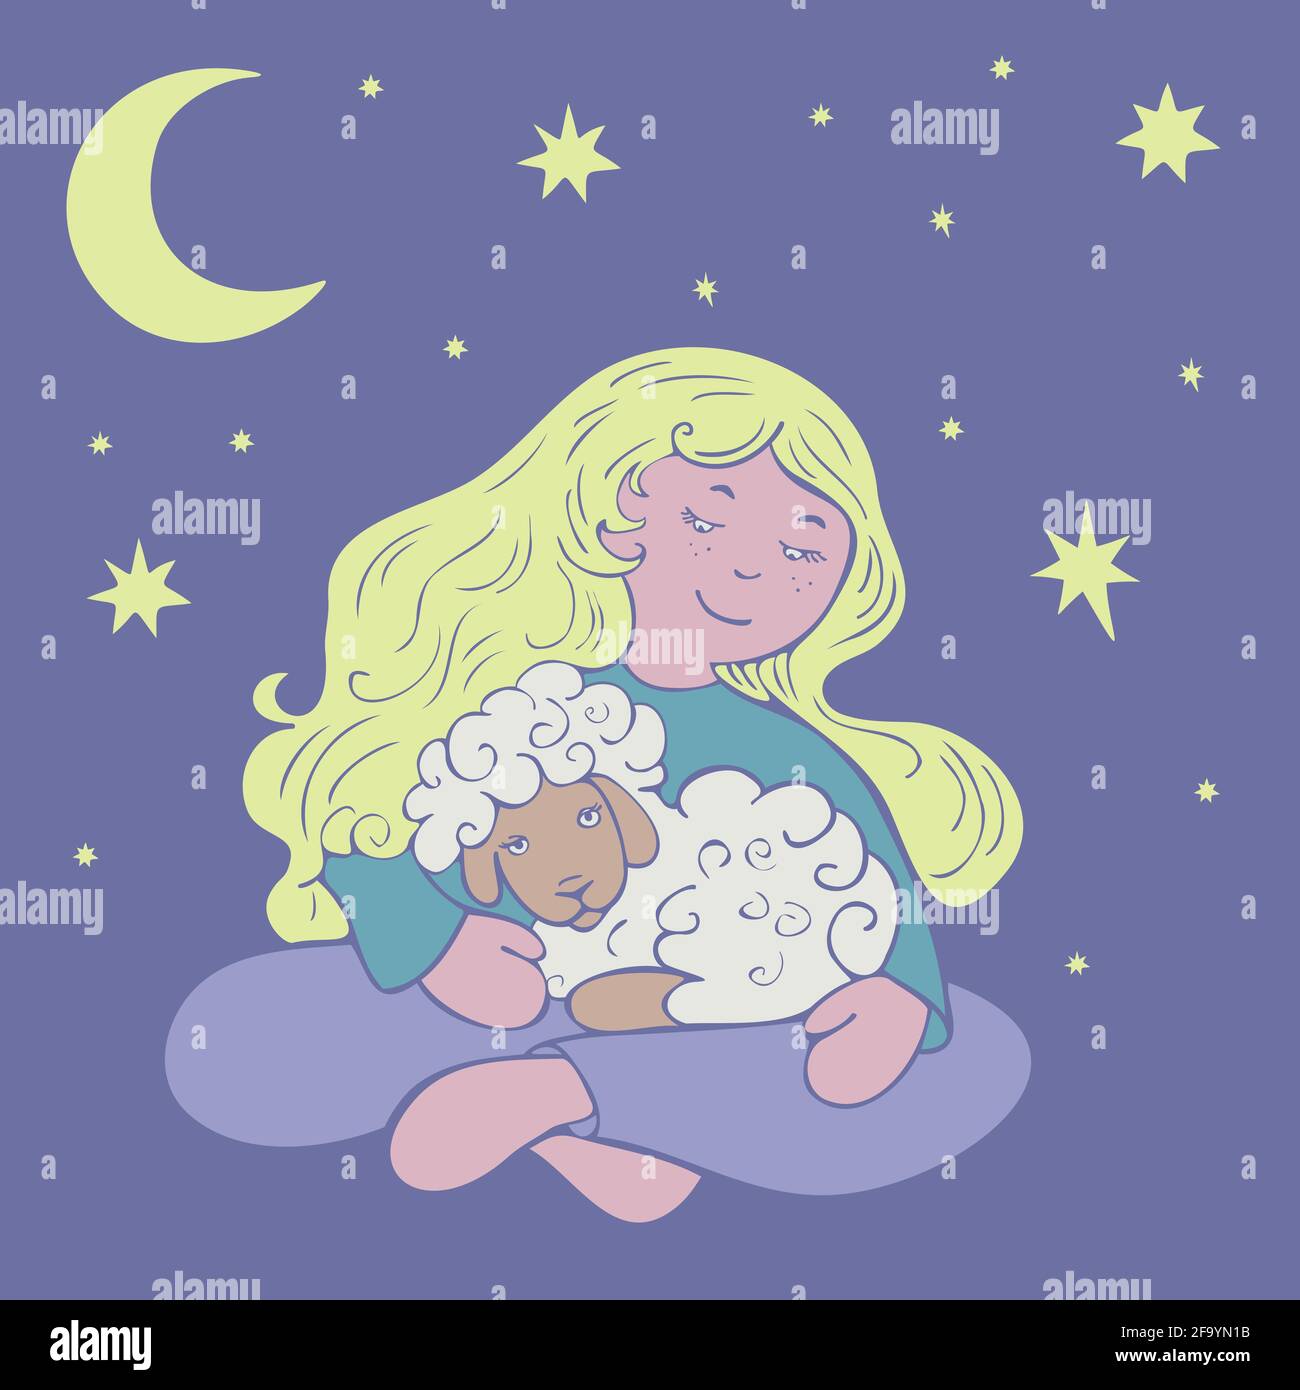 Illustrazione vettoriale con ragazza seduta e agnello con luna e stelle sullo sfondo. Design per Sleepwear o tessuti. Illustrazione Vettoriale